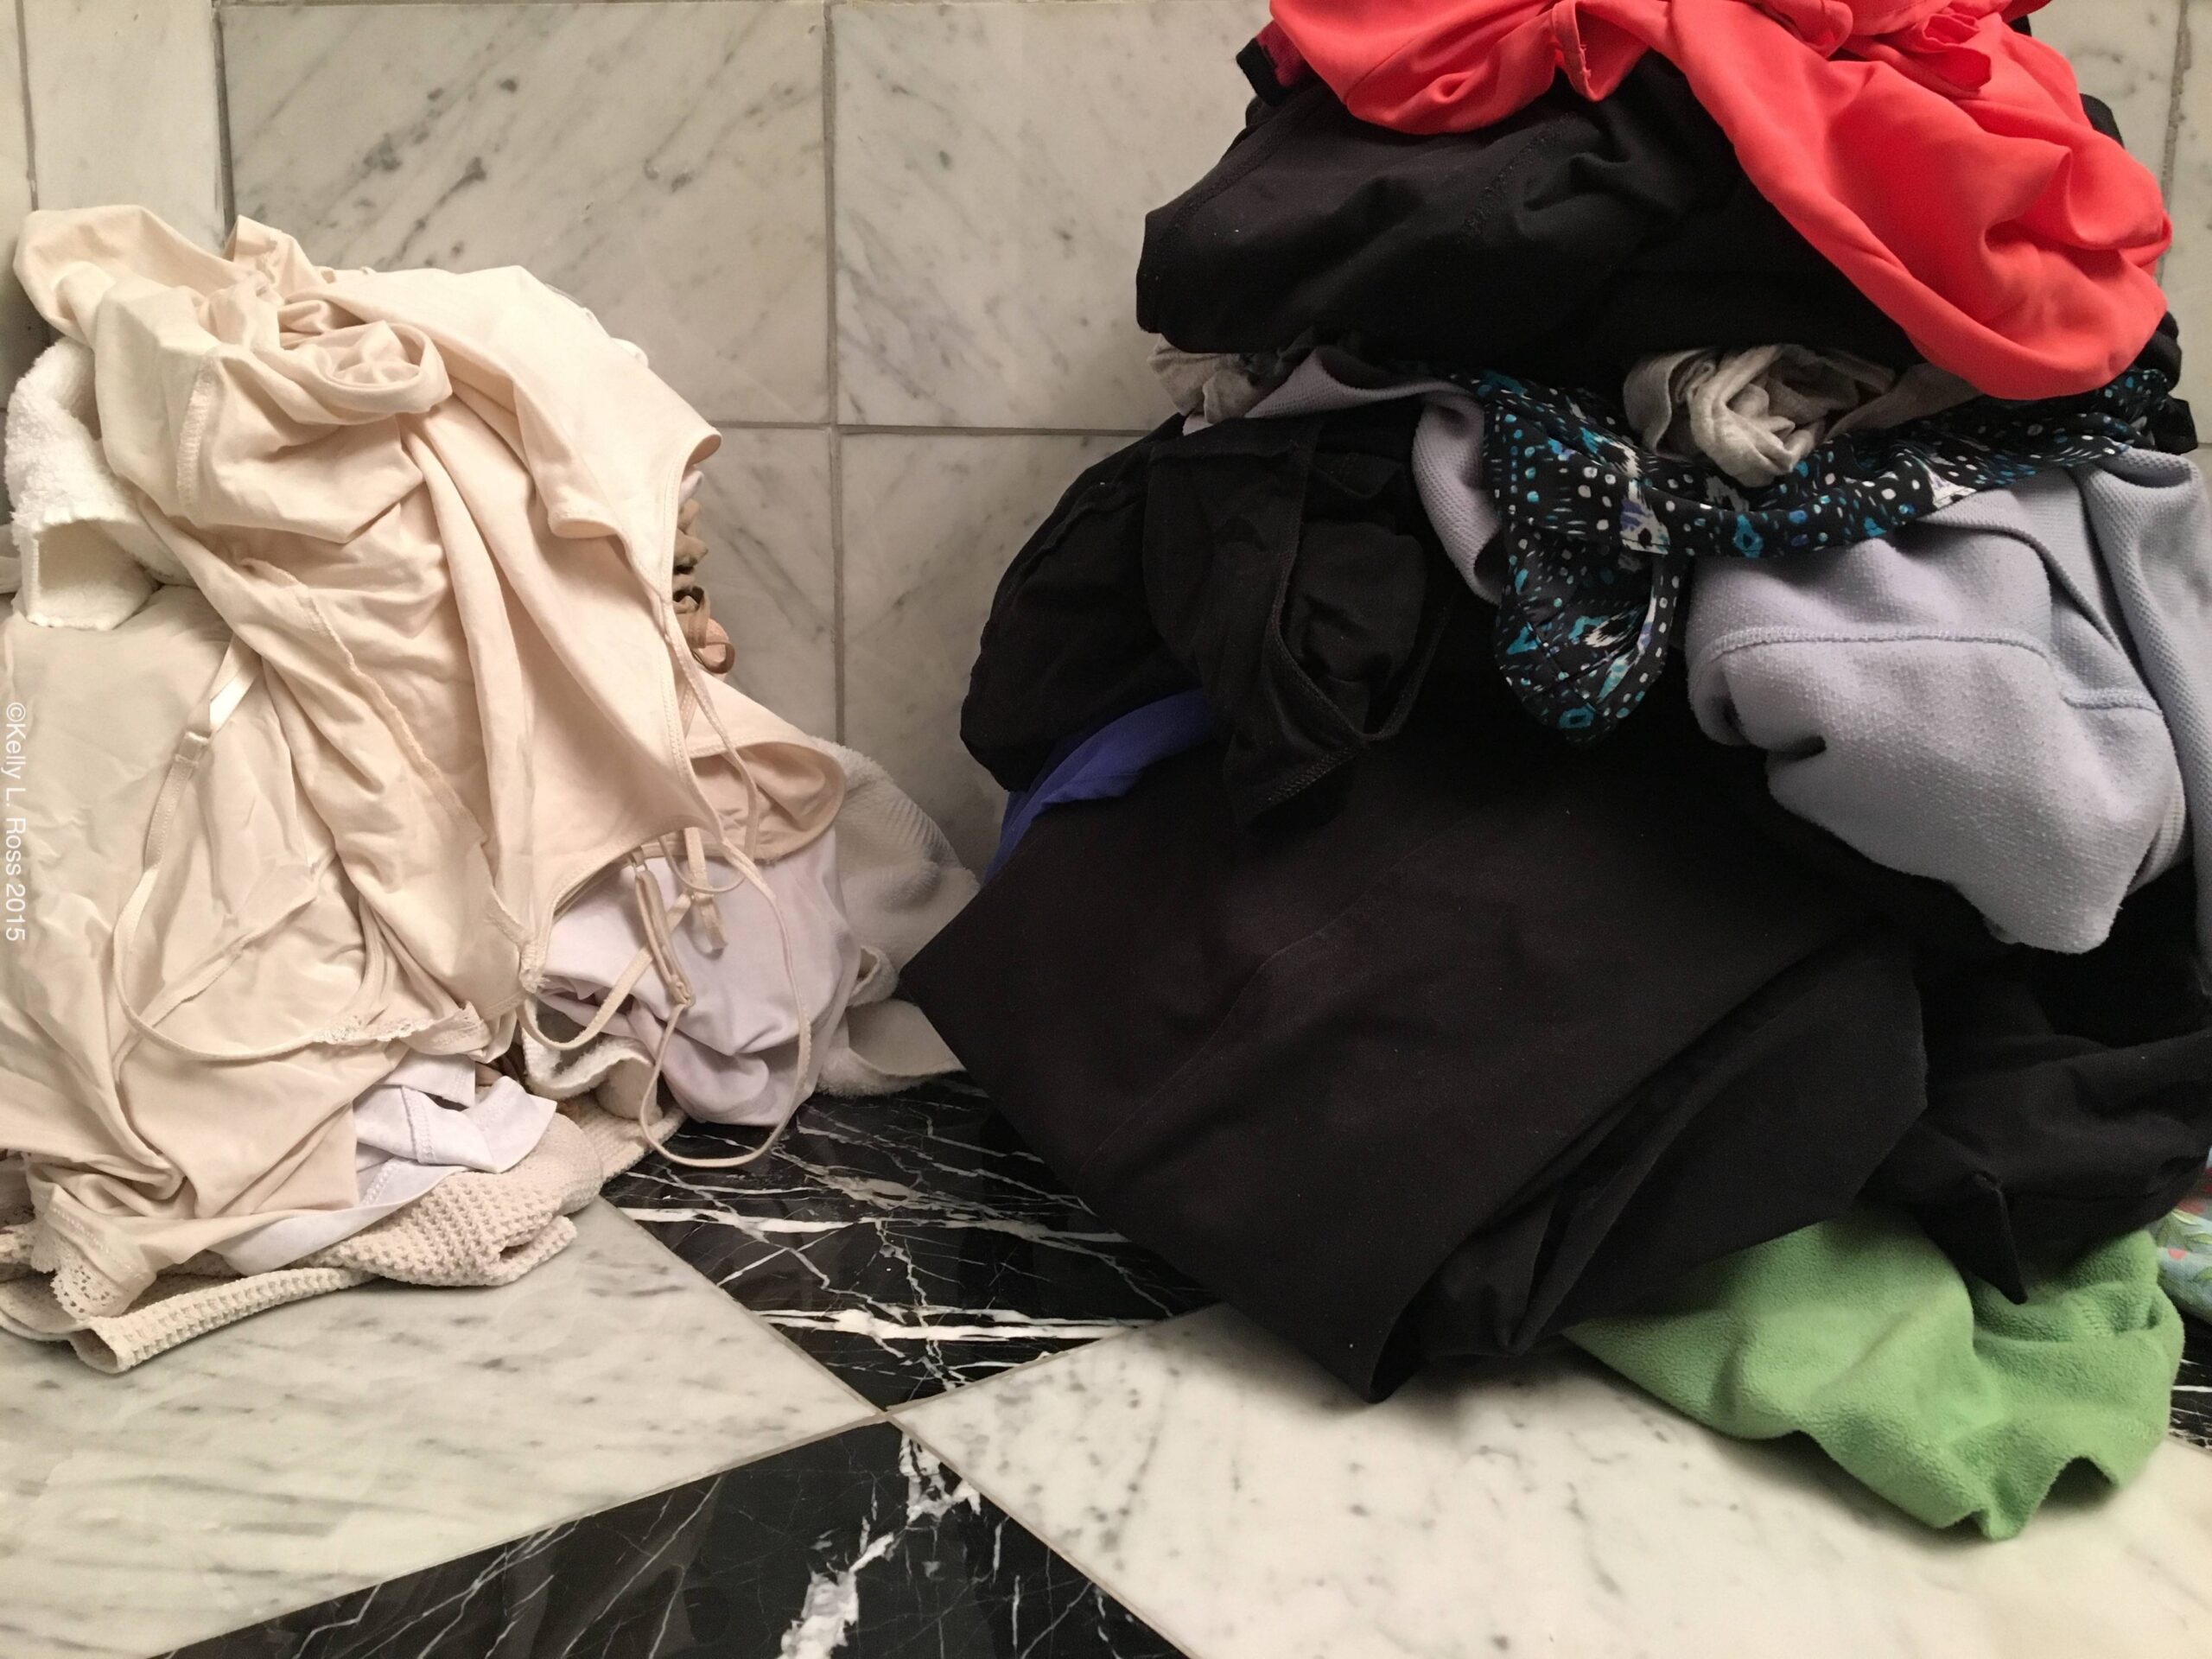 Laundry piles